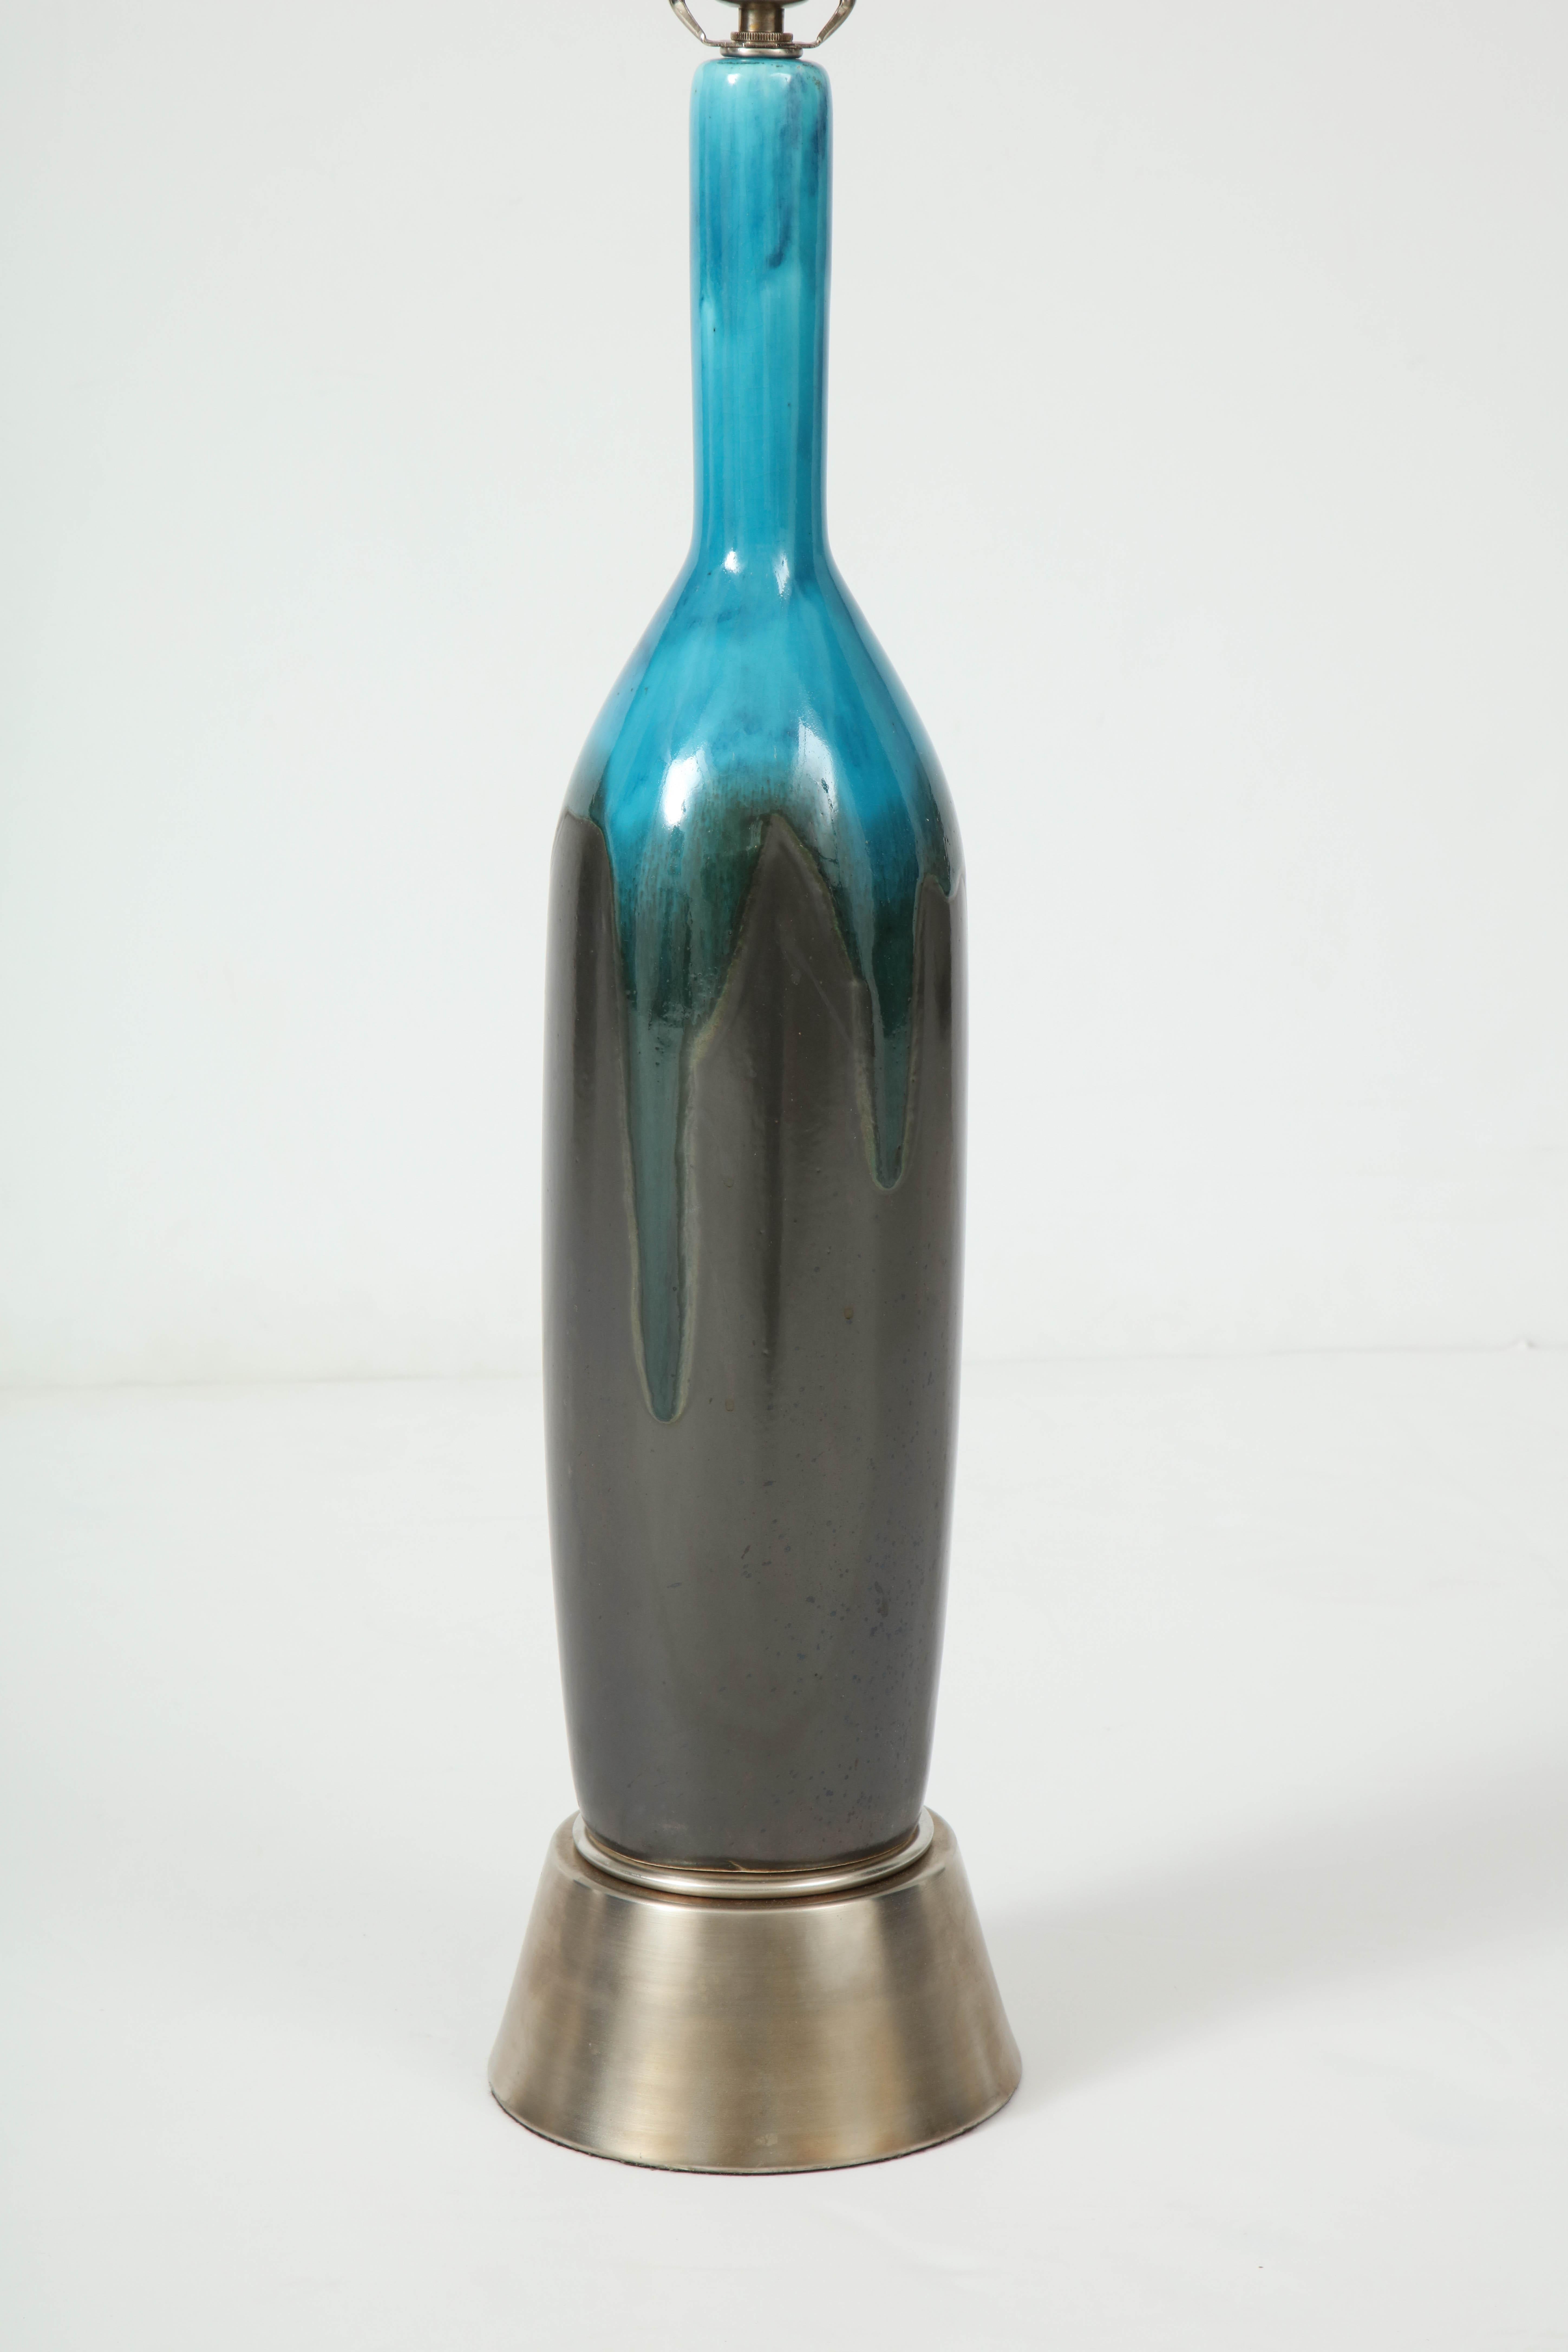 Lampes italiennes du milieu du siècle en céramique avec une glaçure inhabituelle de bronze et de turquoise sur une base surélevée en étain/bronze. Câblée pour une utilisation aux Etats-Unis, ampoules de 100W max.